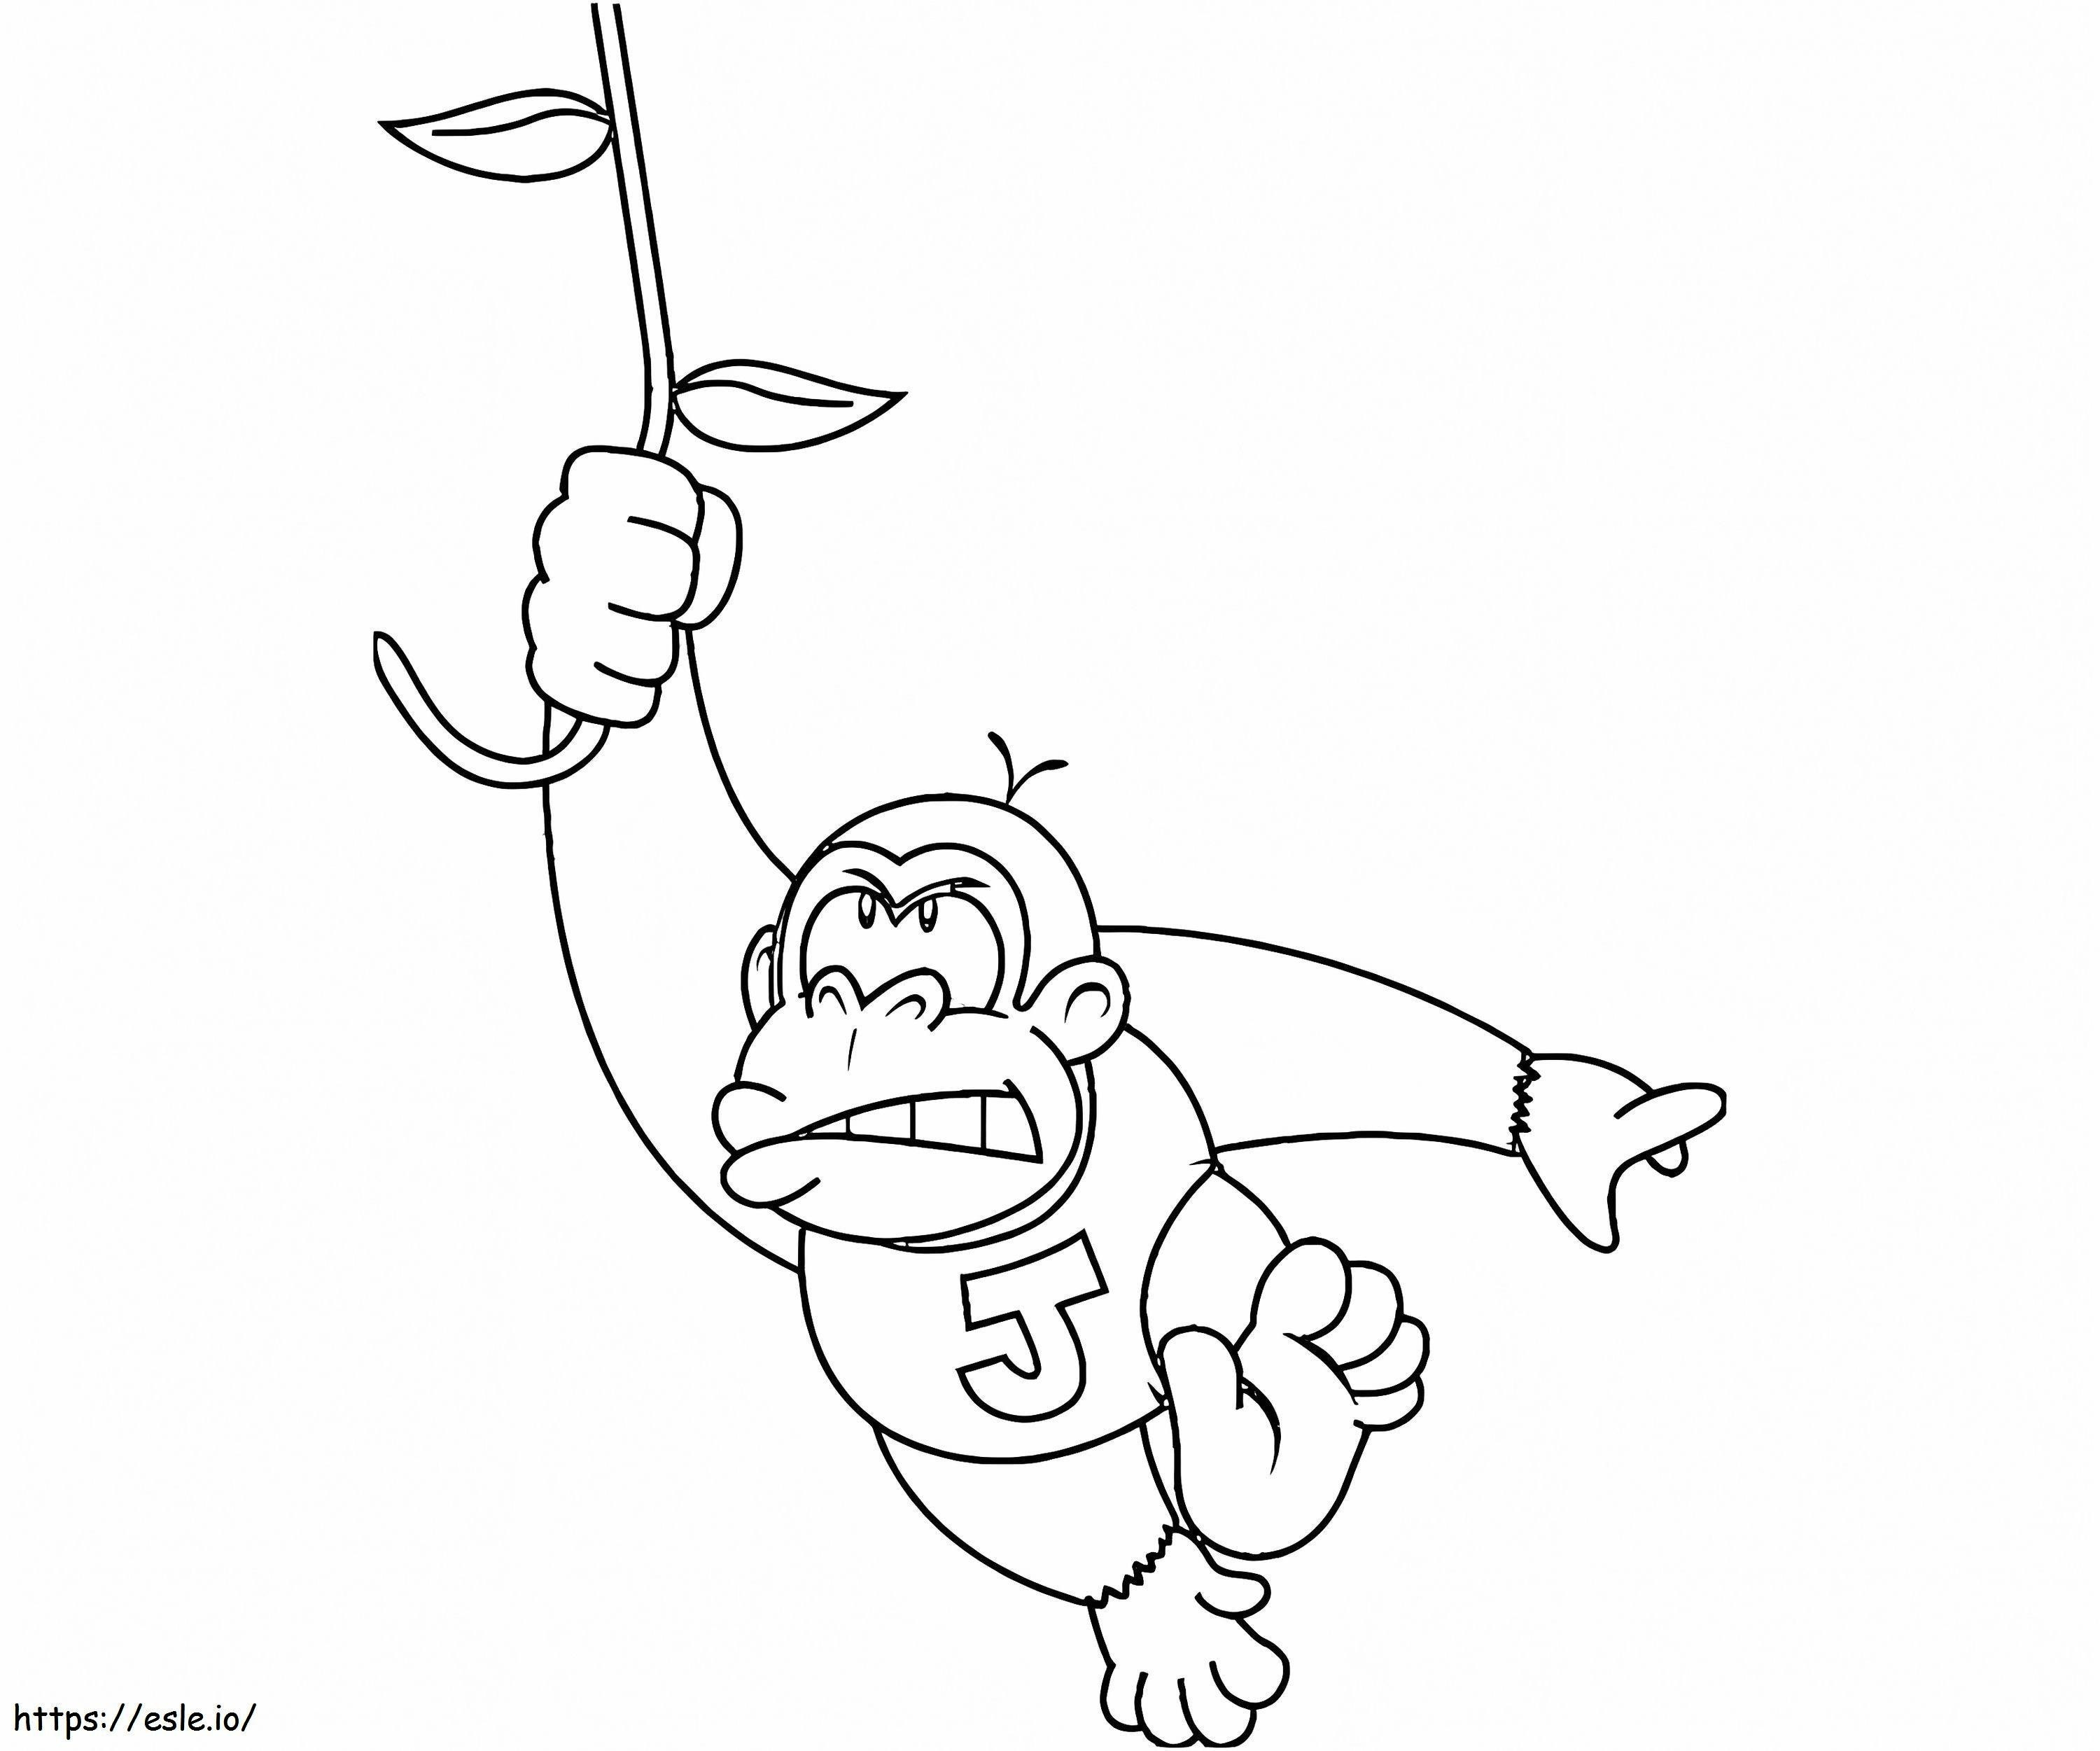 Baby Donkey Kong Escalada para colorear